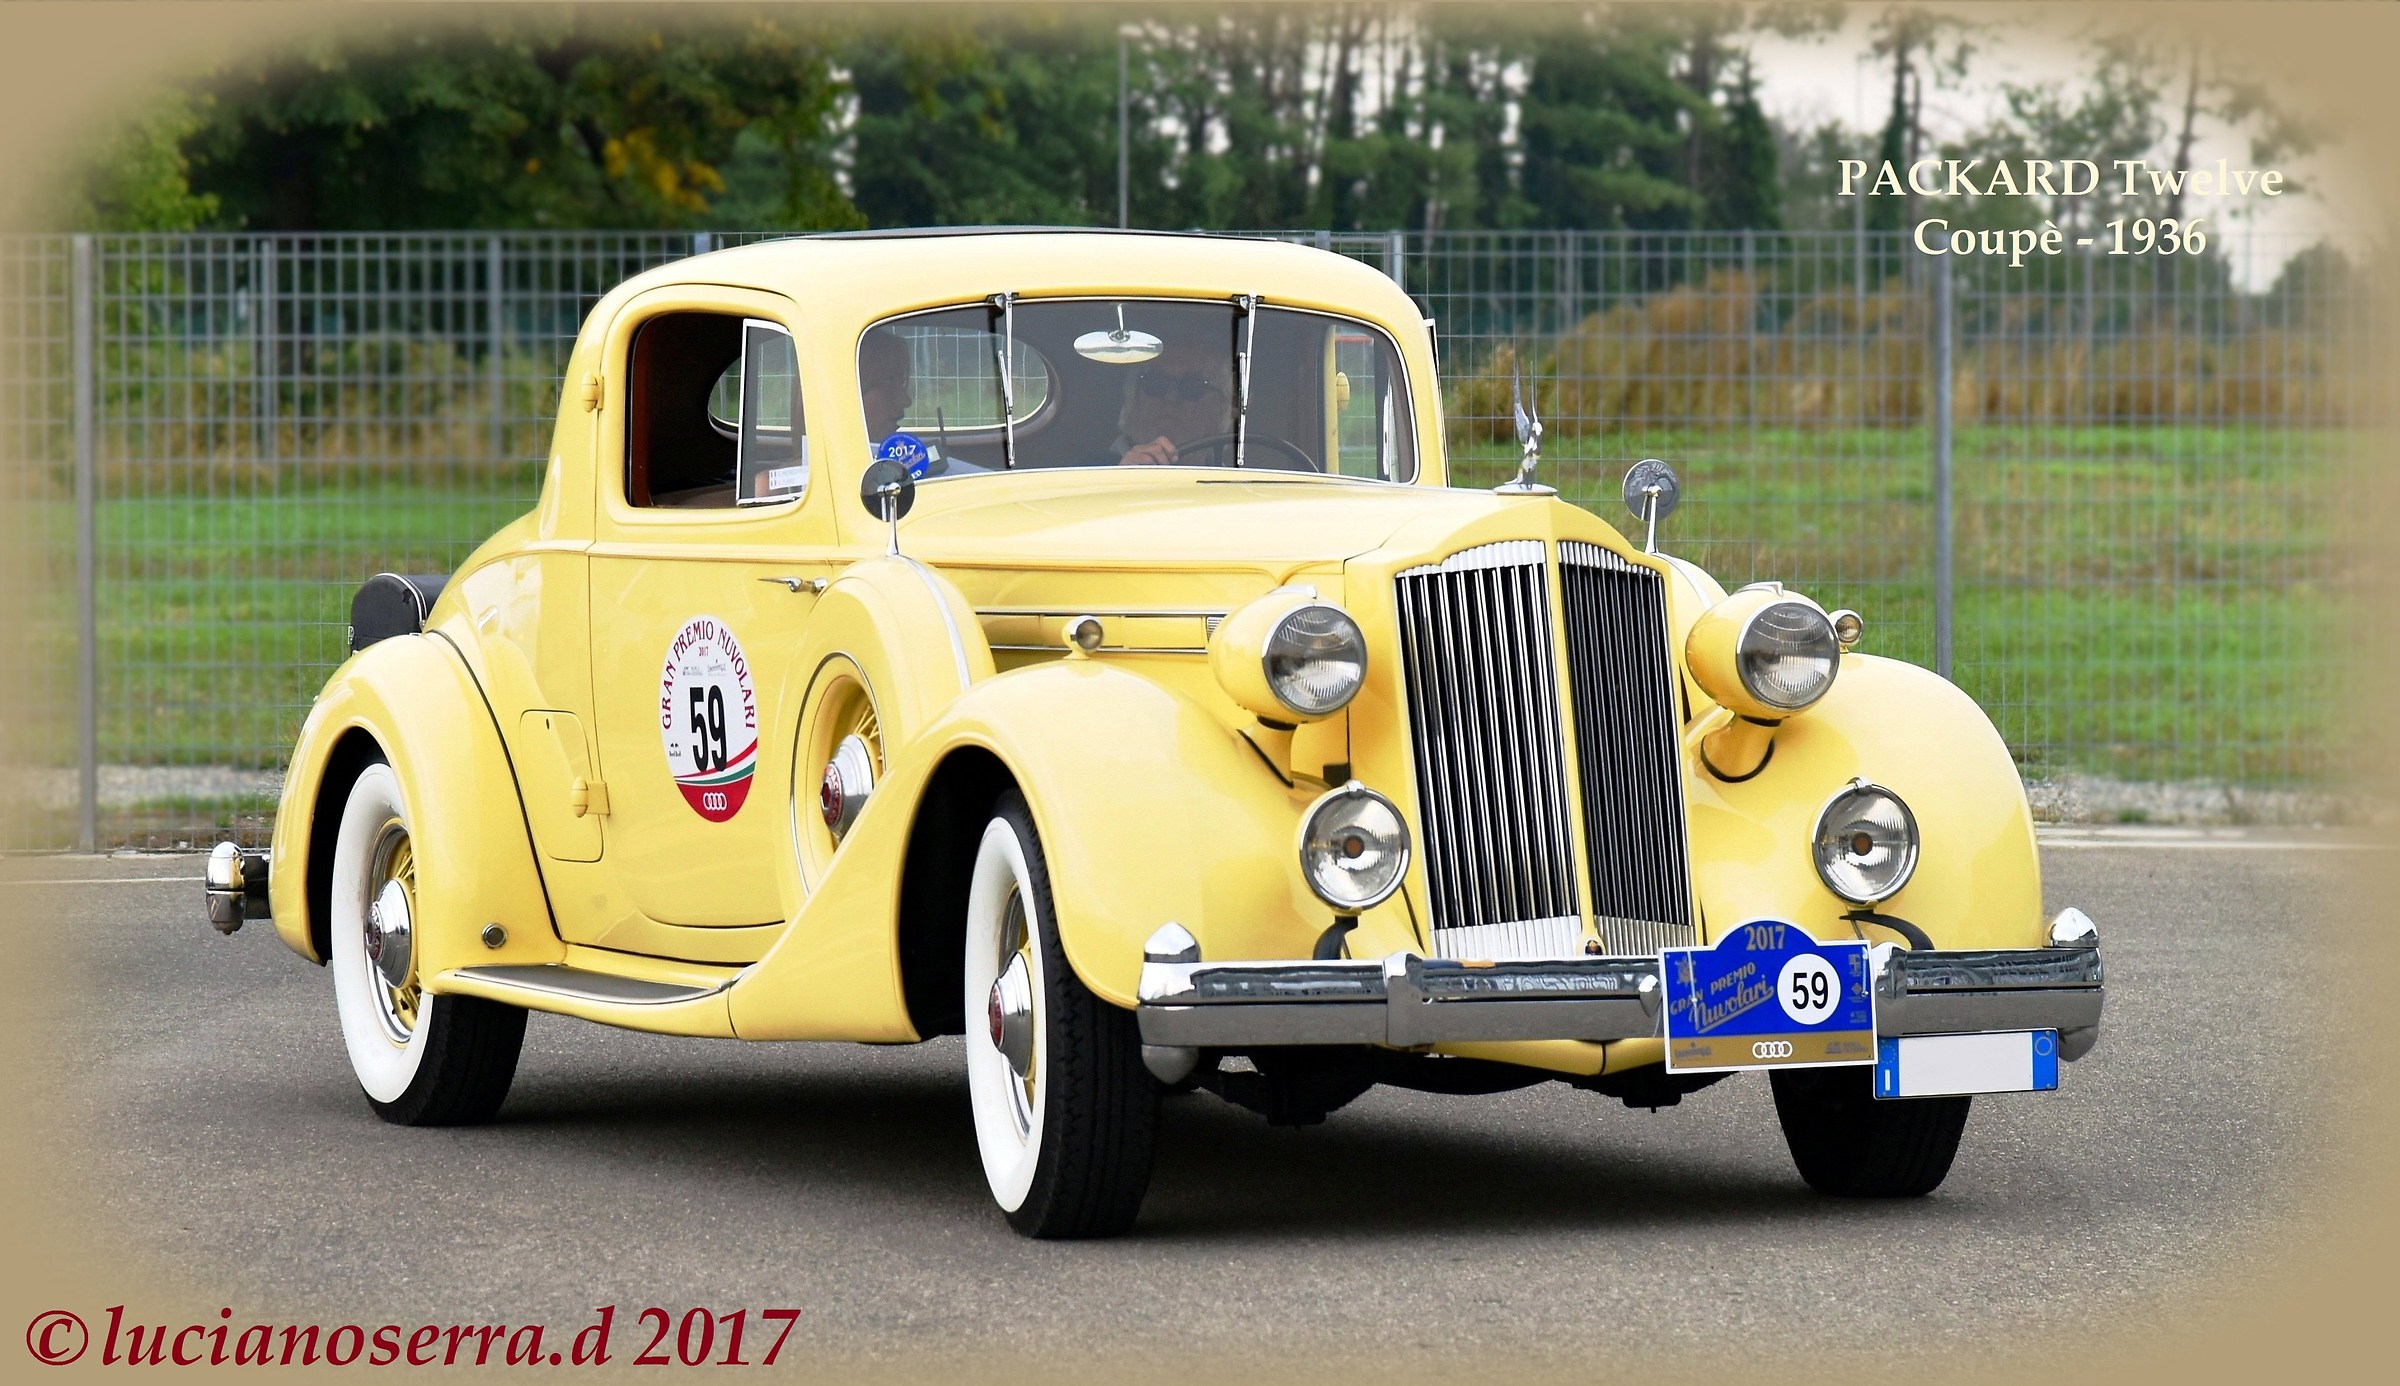 Packard Twelve Coupé - 1936...